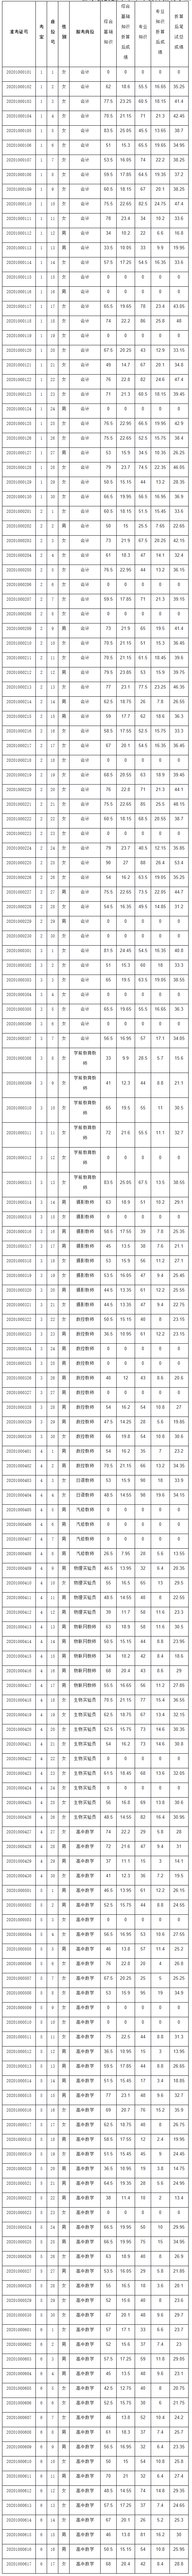 彭水县2020年下半年公开招聘事业单位工作人员(第二批)笔试成绩册